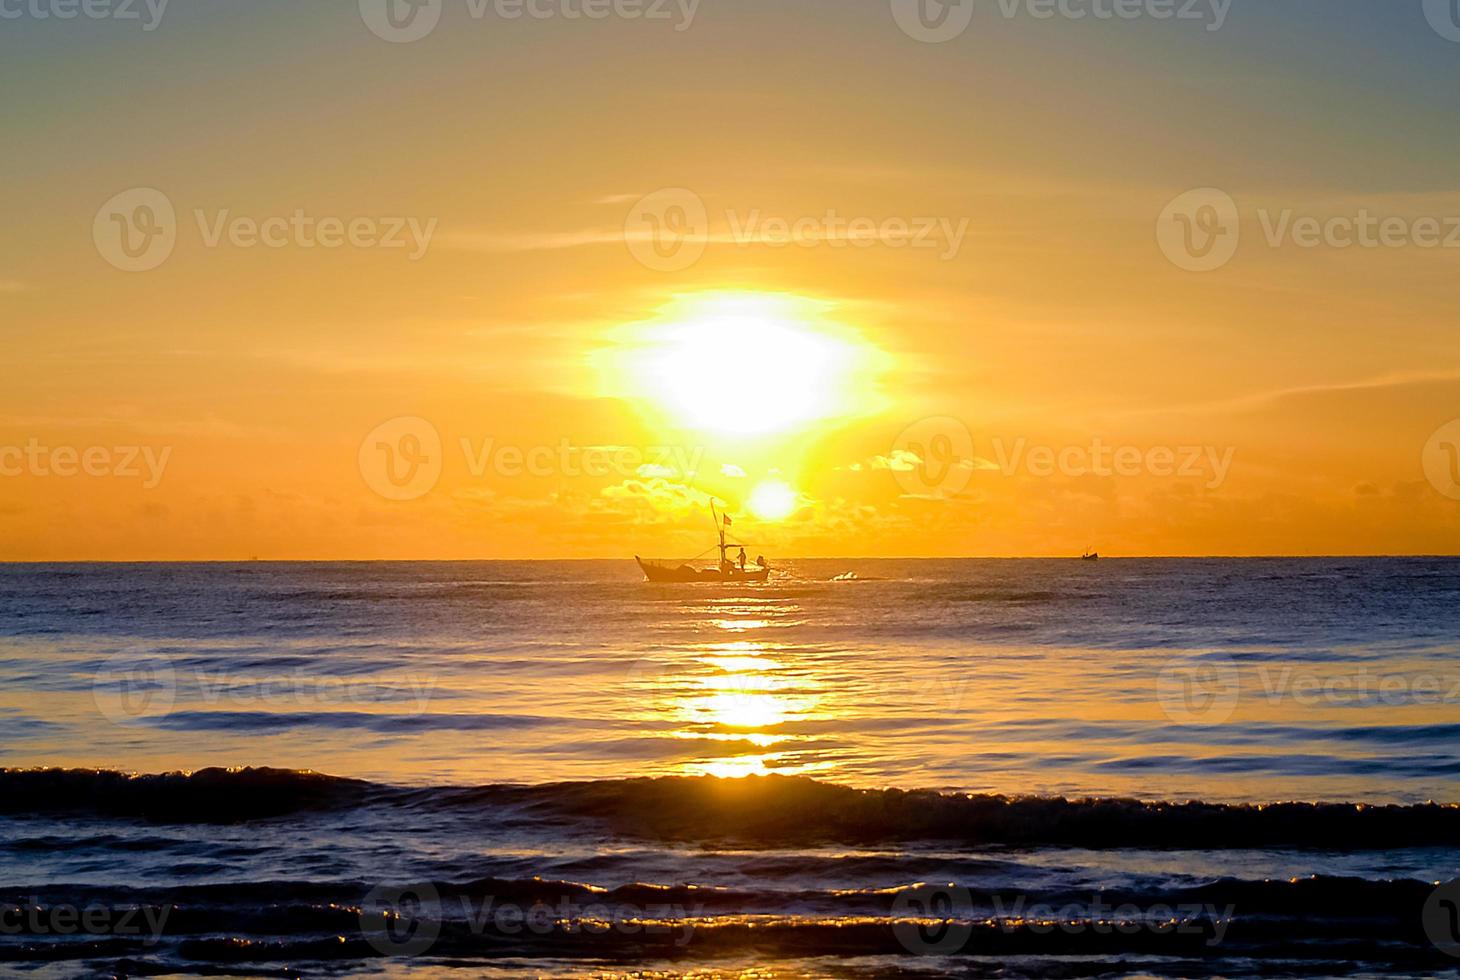 tramonto sul mare la sera, barca a vela sul mare foto